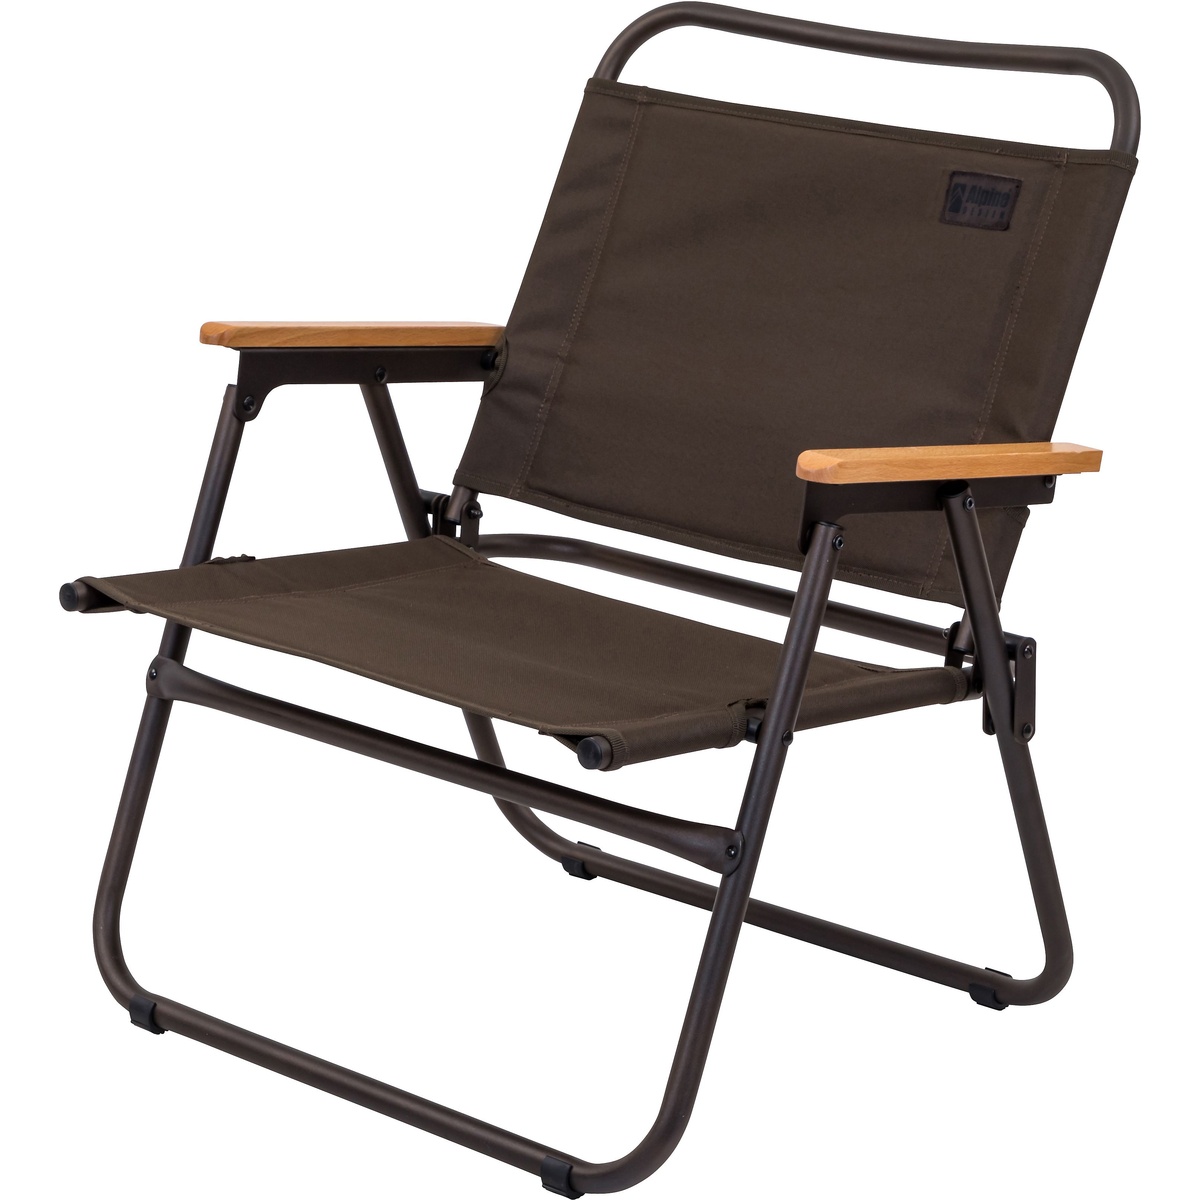 【楽天市場】Alpine DESIGN (アルパインデザイン) フォールディングローチェア キャンプ用品 ファミリーチェア 椅子 ダーク